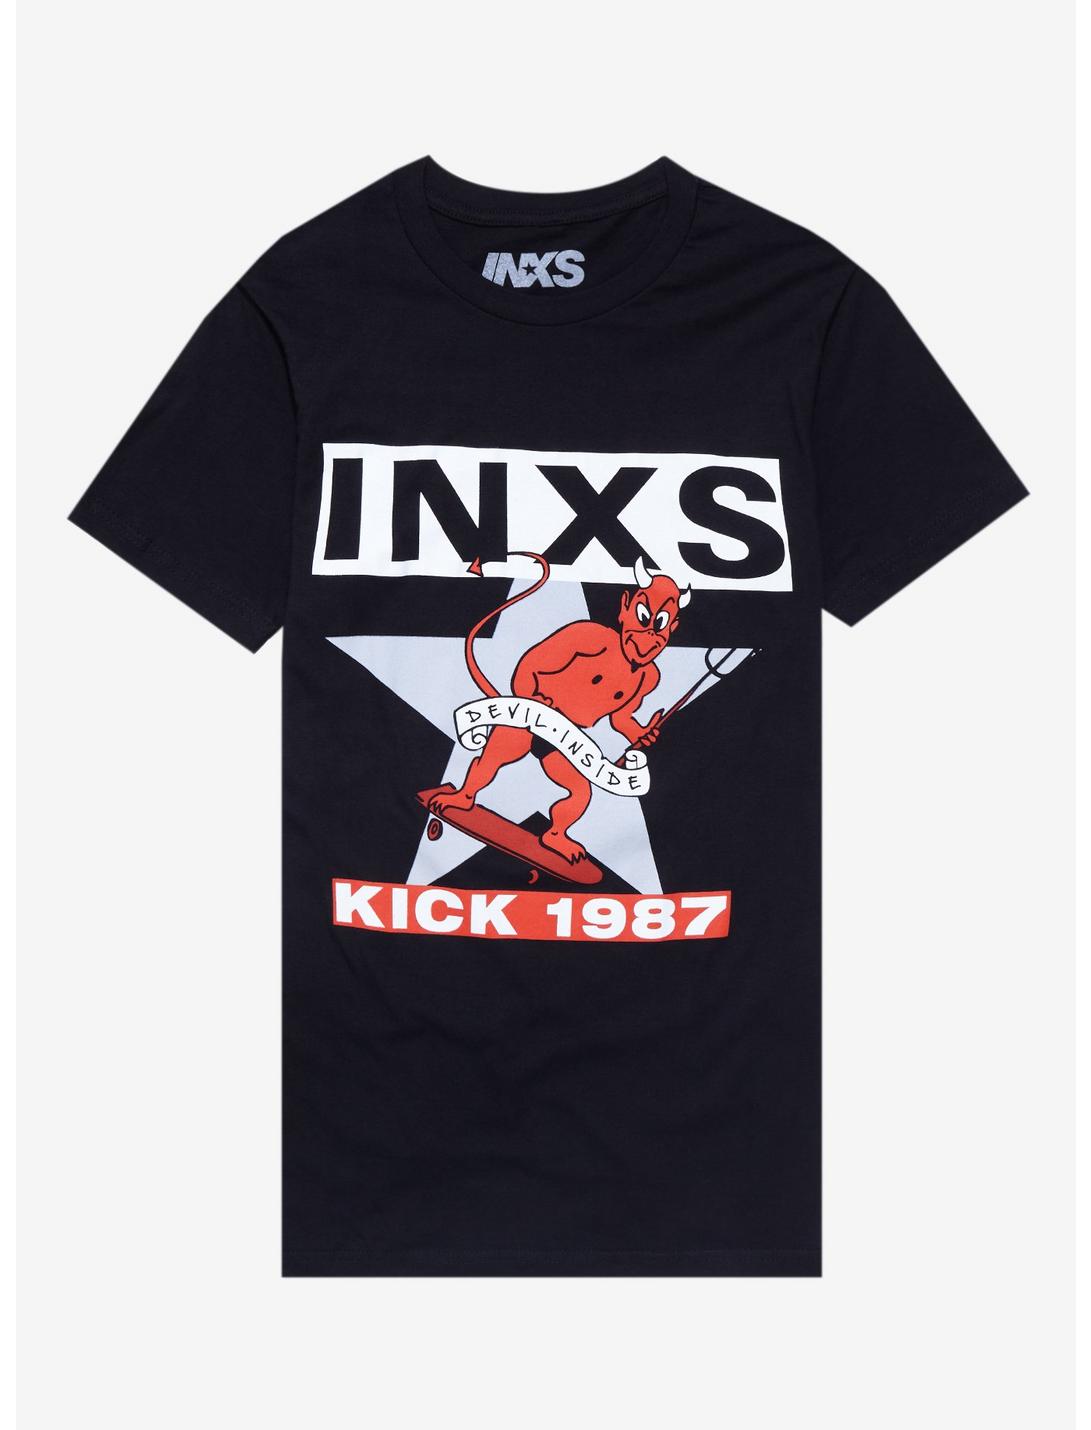 INXS Kick 1987 Boyfriend Fit Girls T-Shirt, BLACK, hi-res